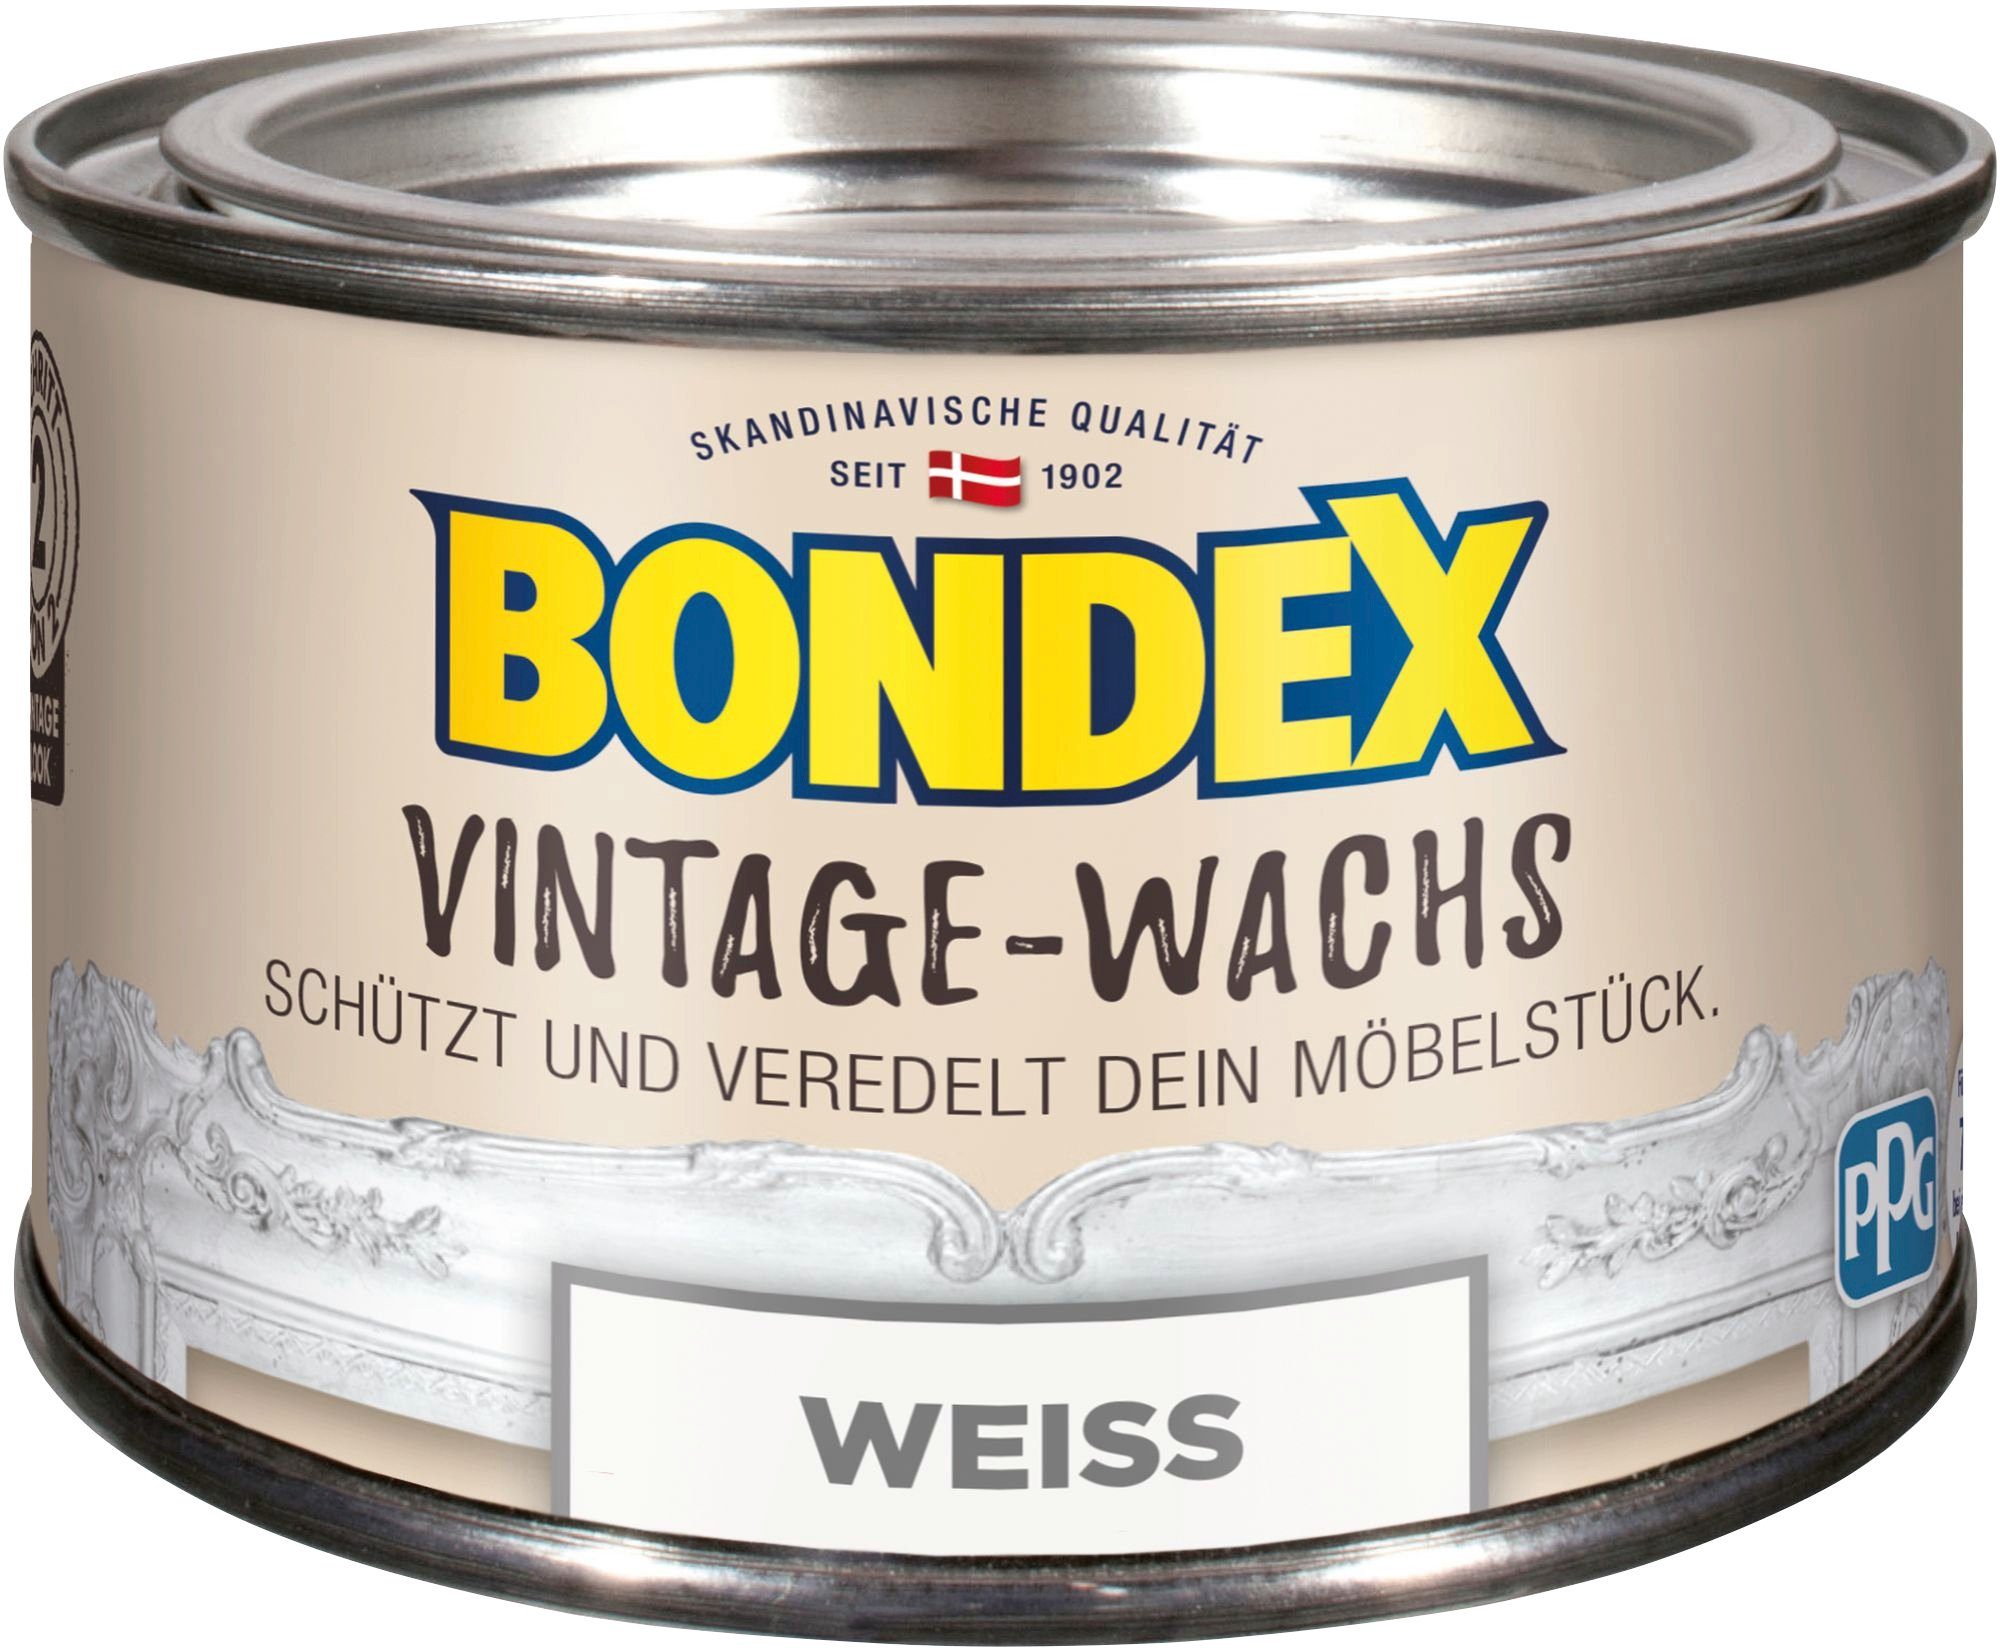 Bondex VINTAGE-WACHS Grau und Schutzwachs, Möbelstücke, der l weiß Veredelung 0,25 zum Schutz